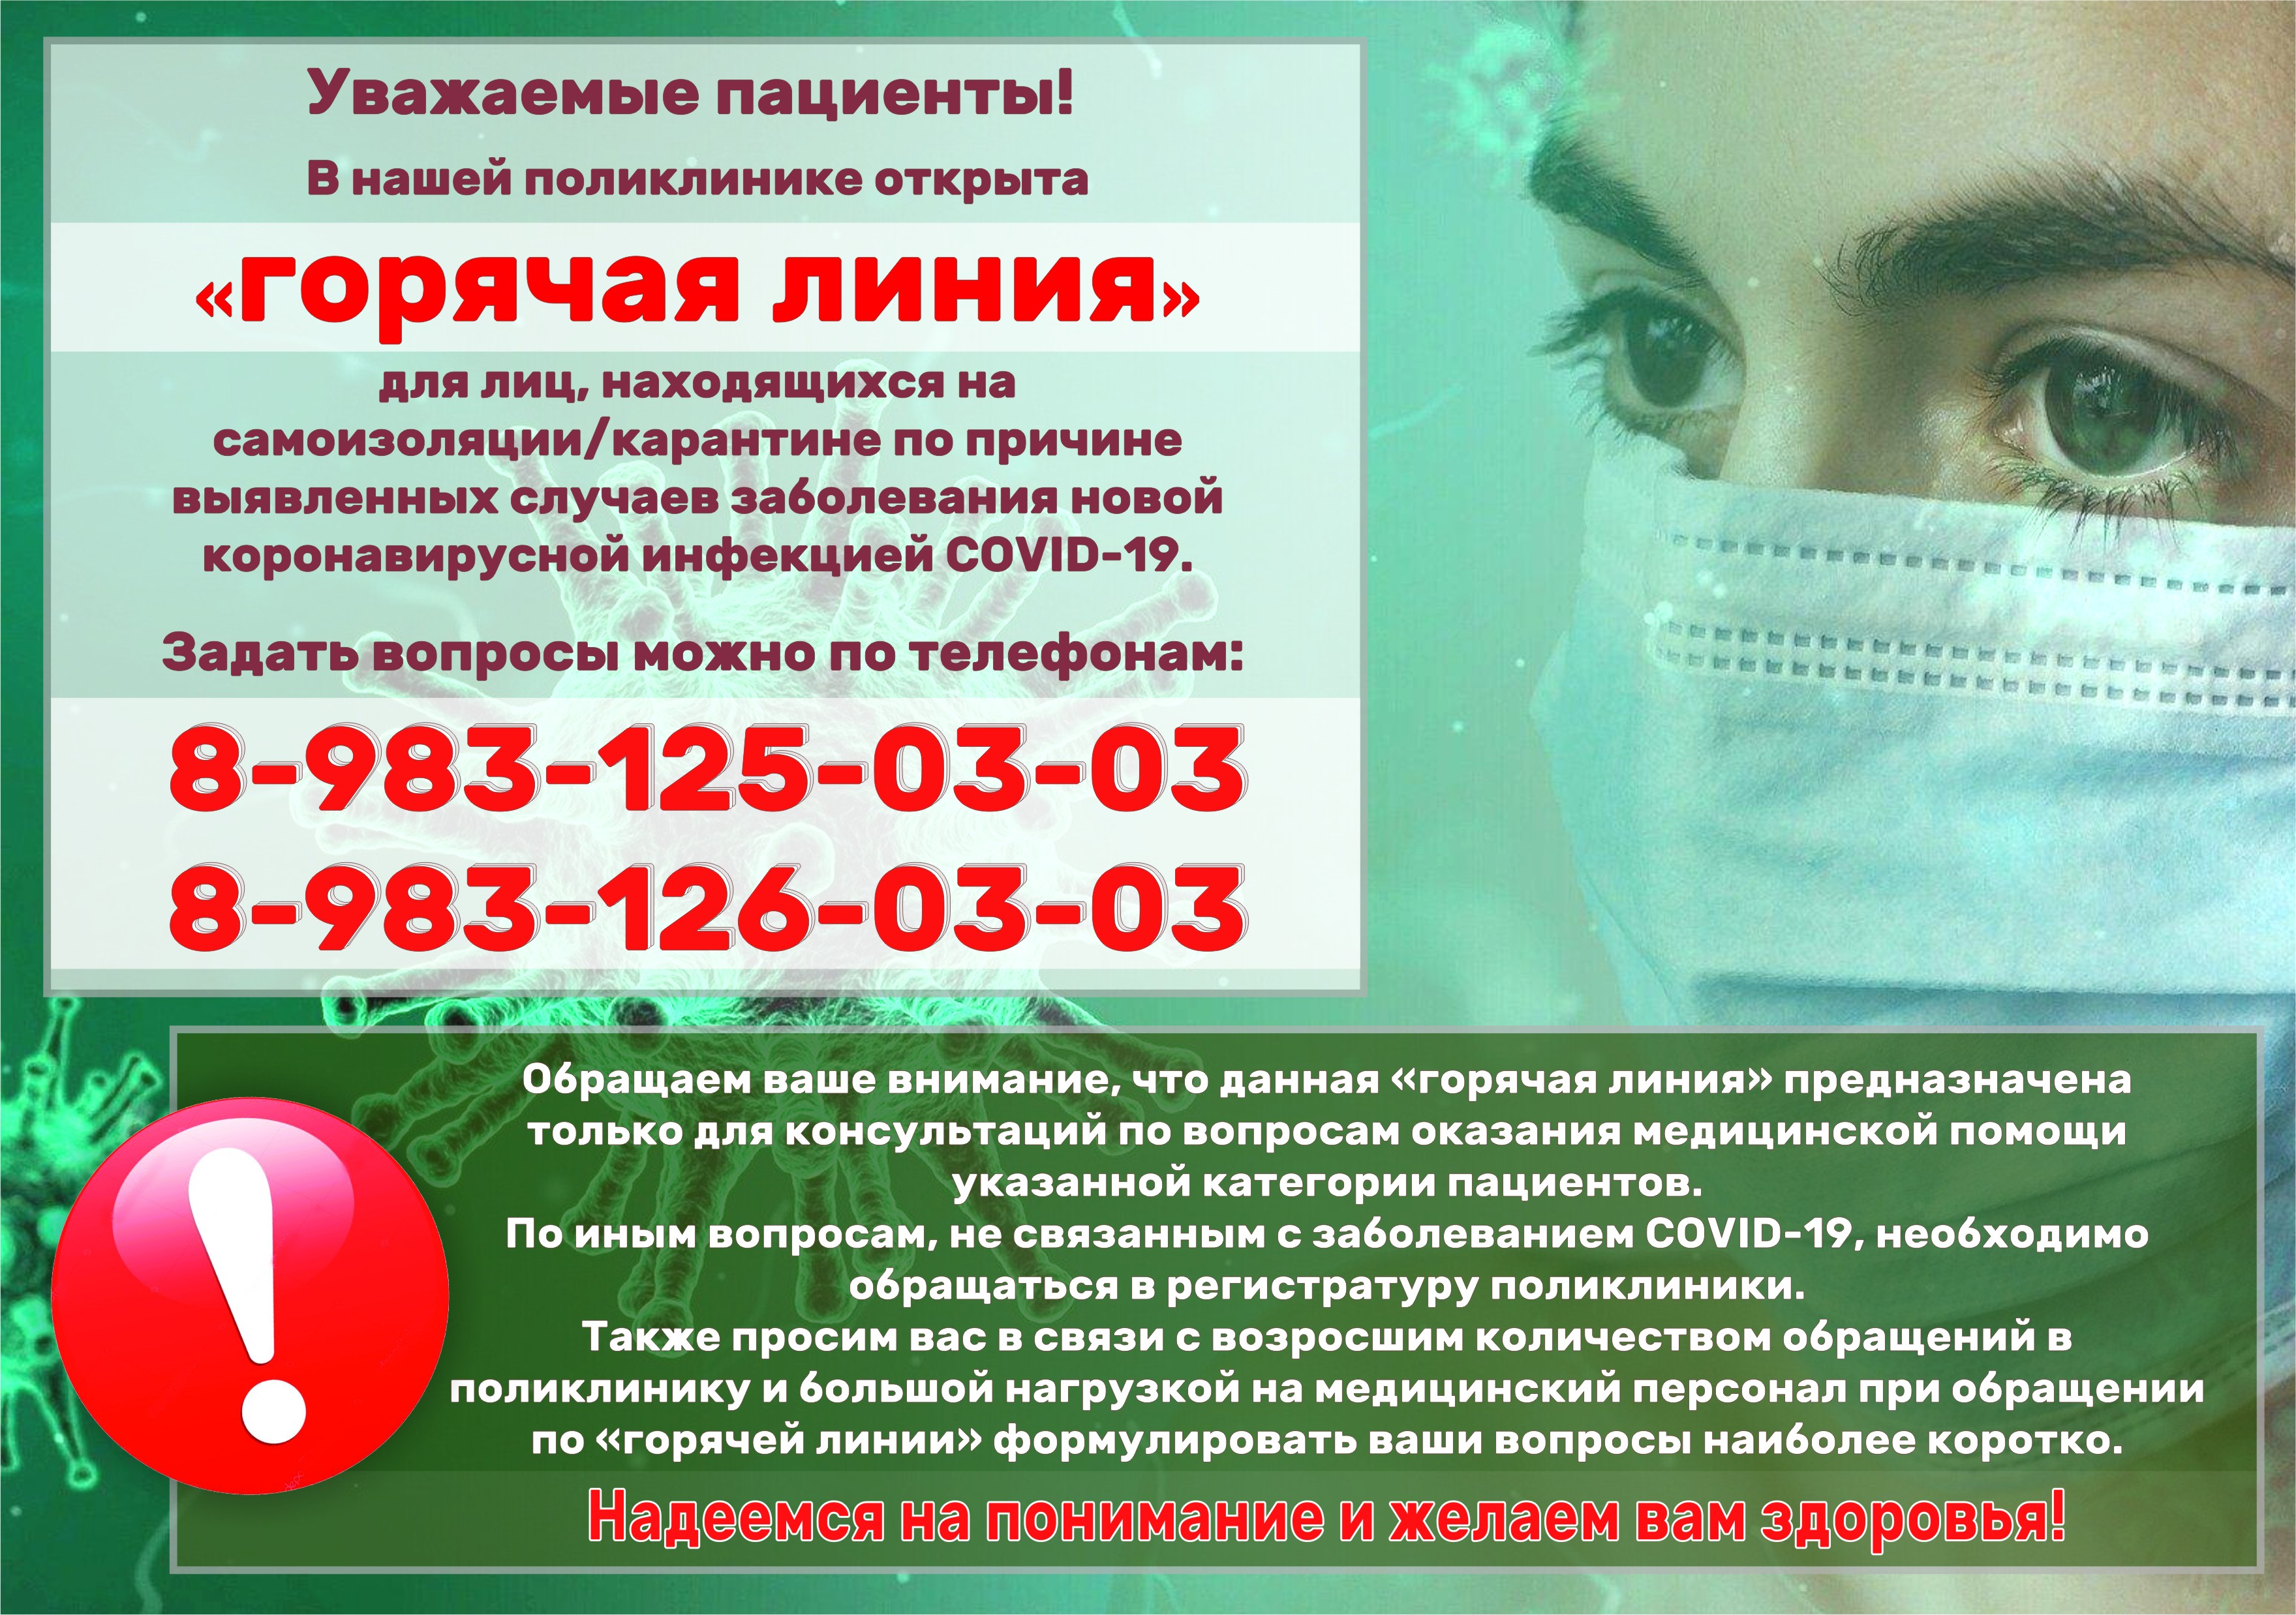 Телефон здравоохранения новосибирской области